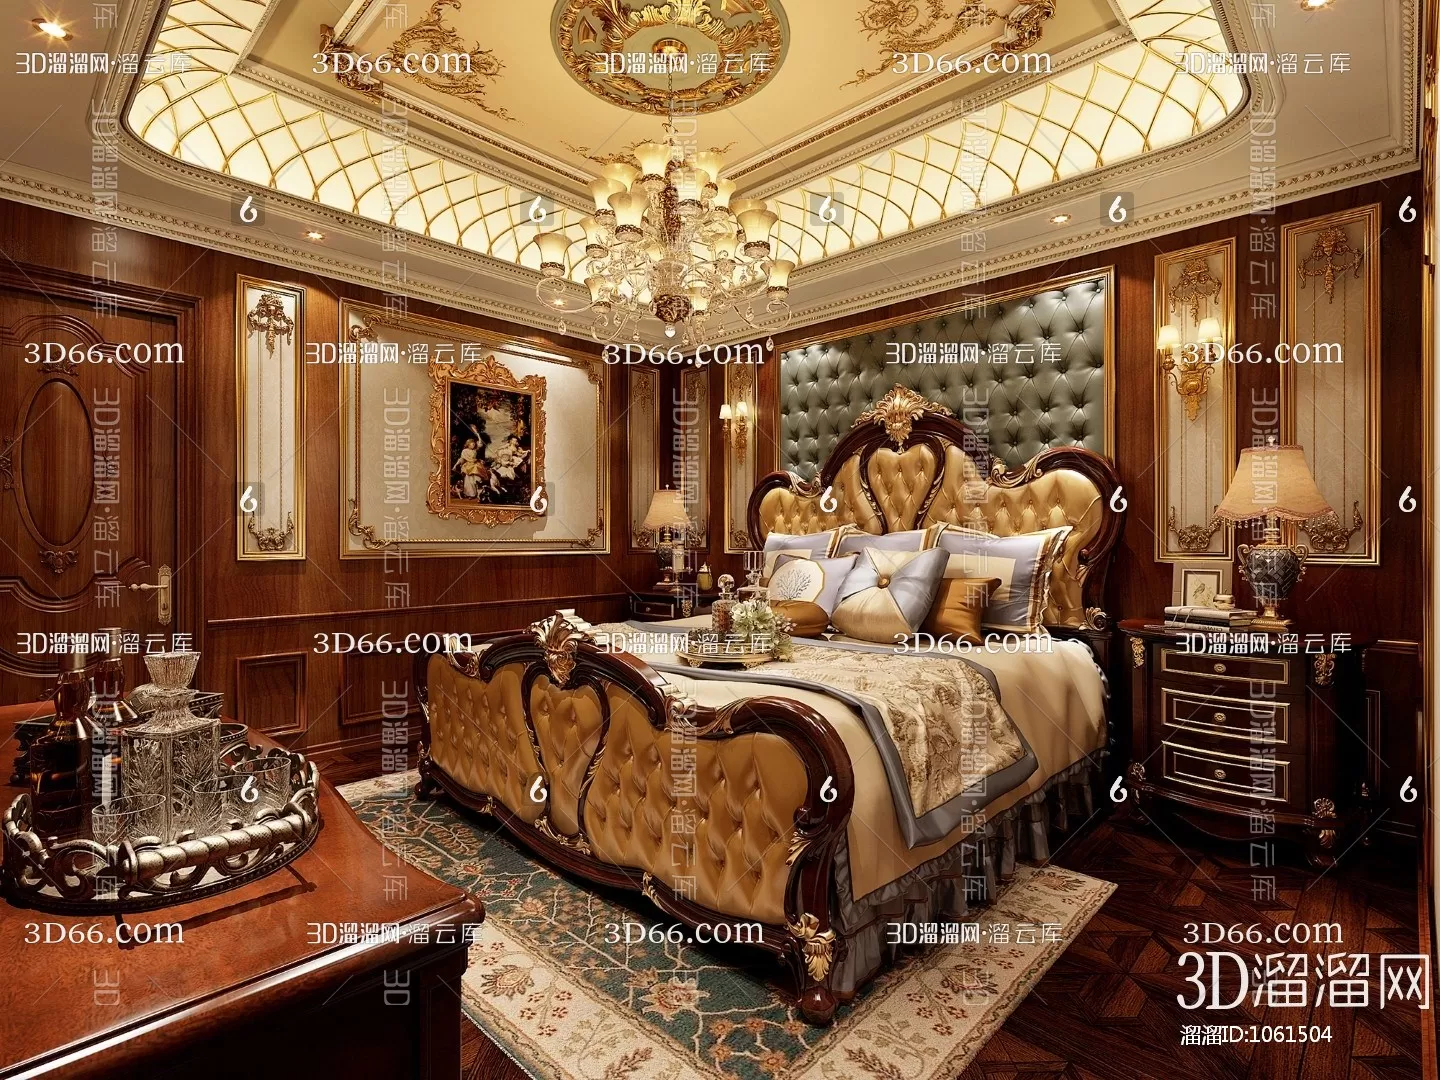 Bedroom 3D Scenes – European – 0132